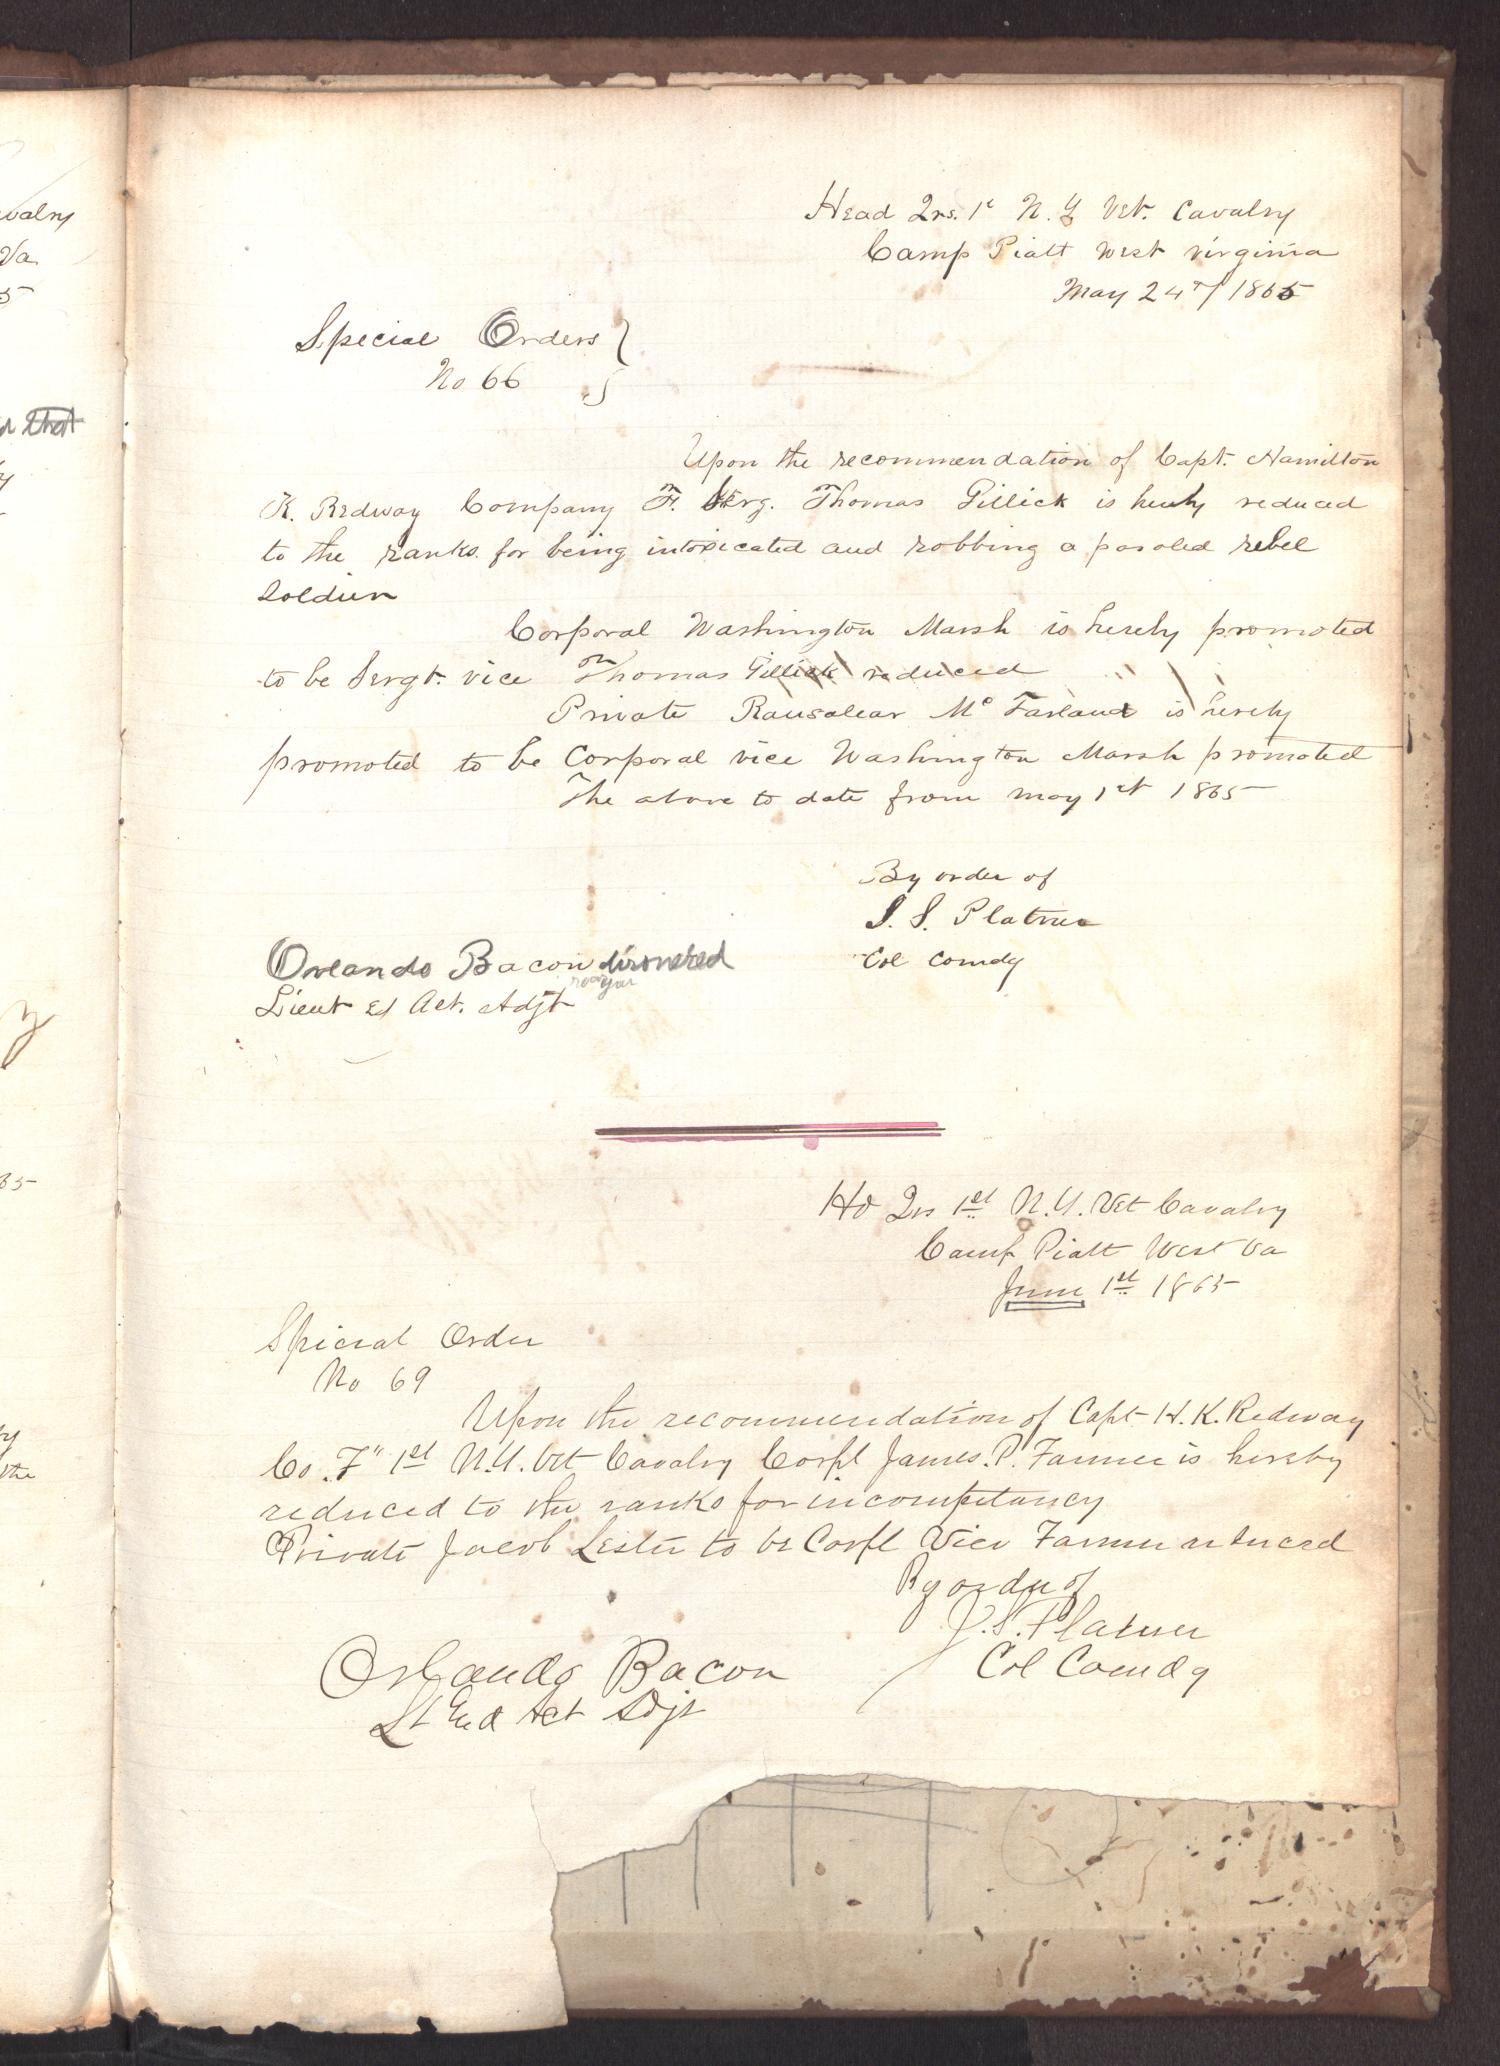 [Company Orders Book, June 15, 1864-June 1865]
                                                
                                                    13
                                                